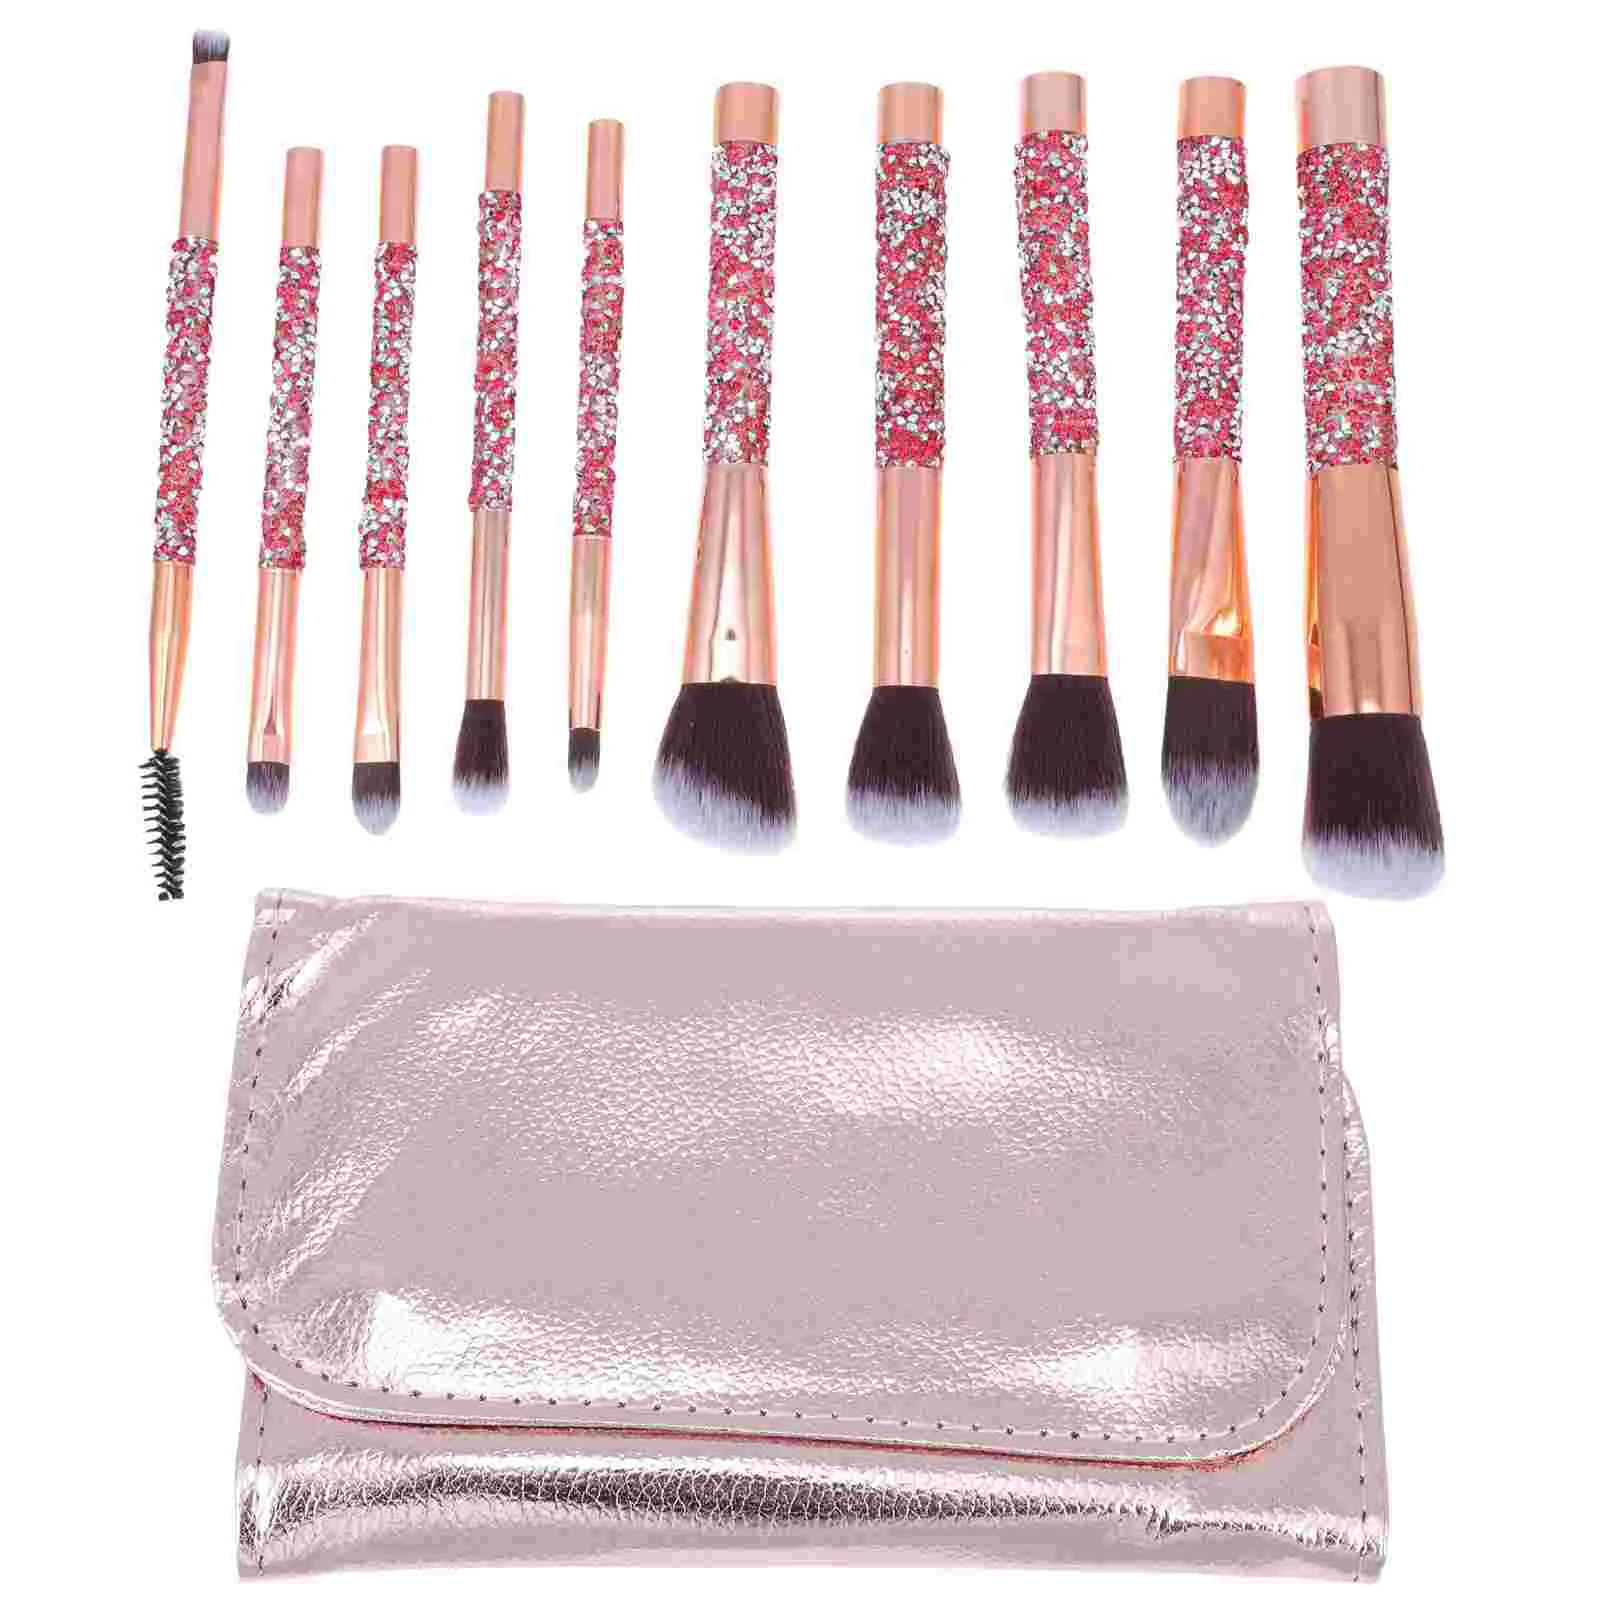 

Brush Makeup Brushes Face Set Blush Concealer Handheld Eyeshadow Kabuki Blending Foundation Portable Kit Supplies Loose